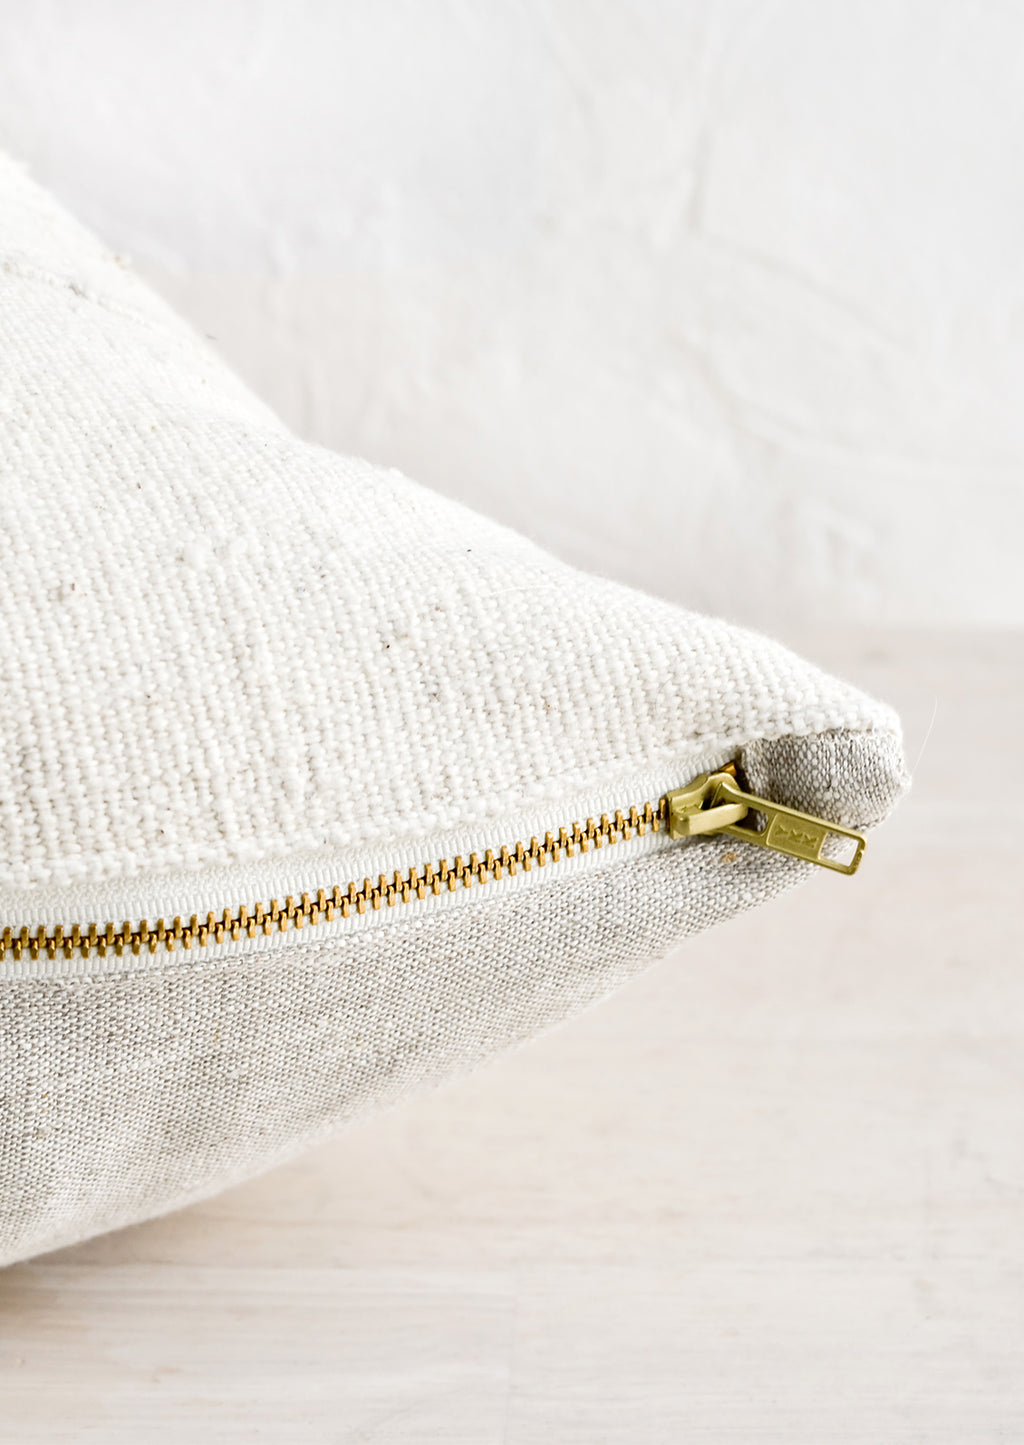 4: An exposed brass zipper on the bottom of a throw pillow.